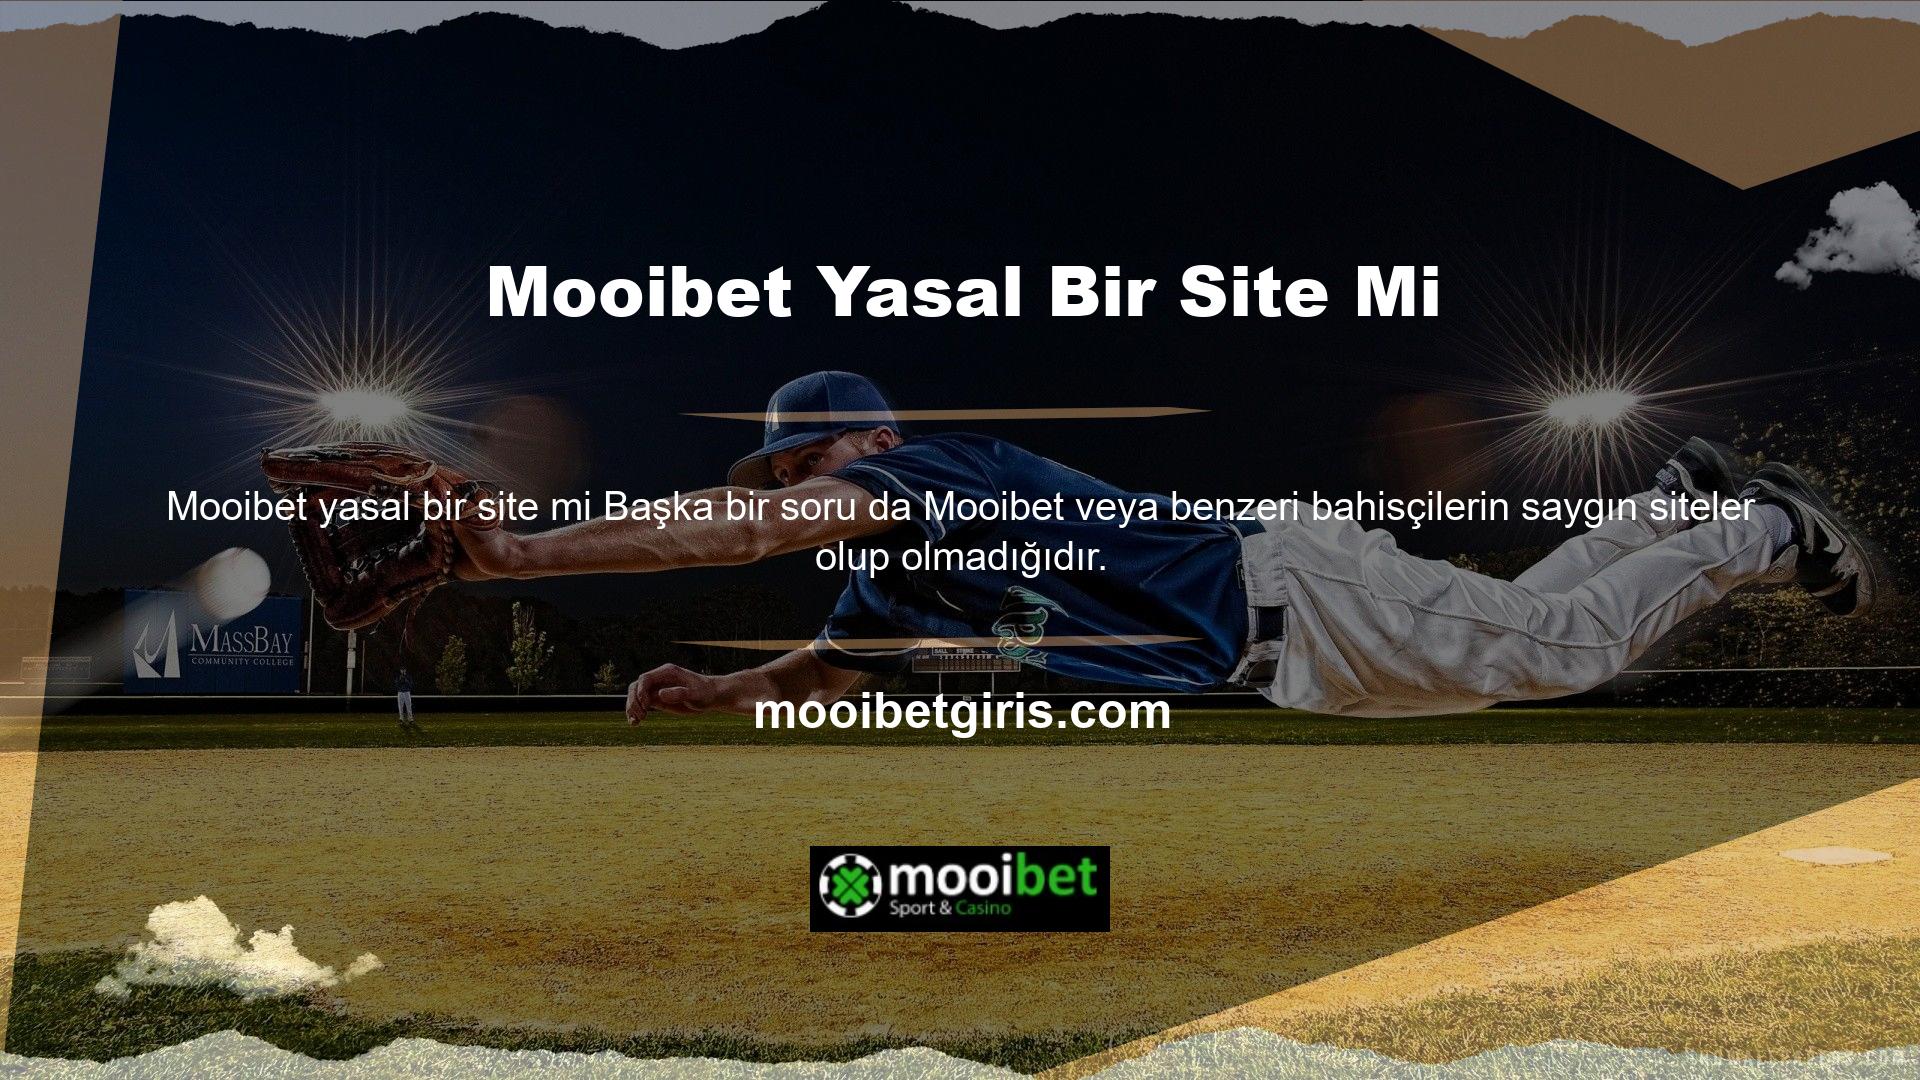 Mooibet Yasal Bir Site Mi